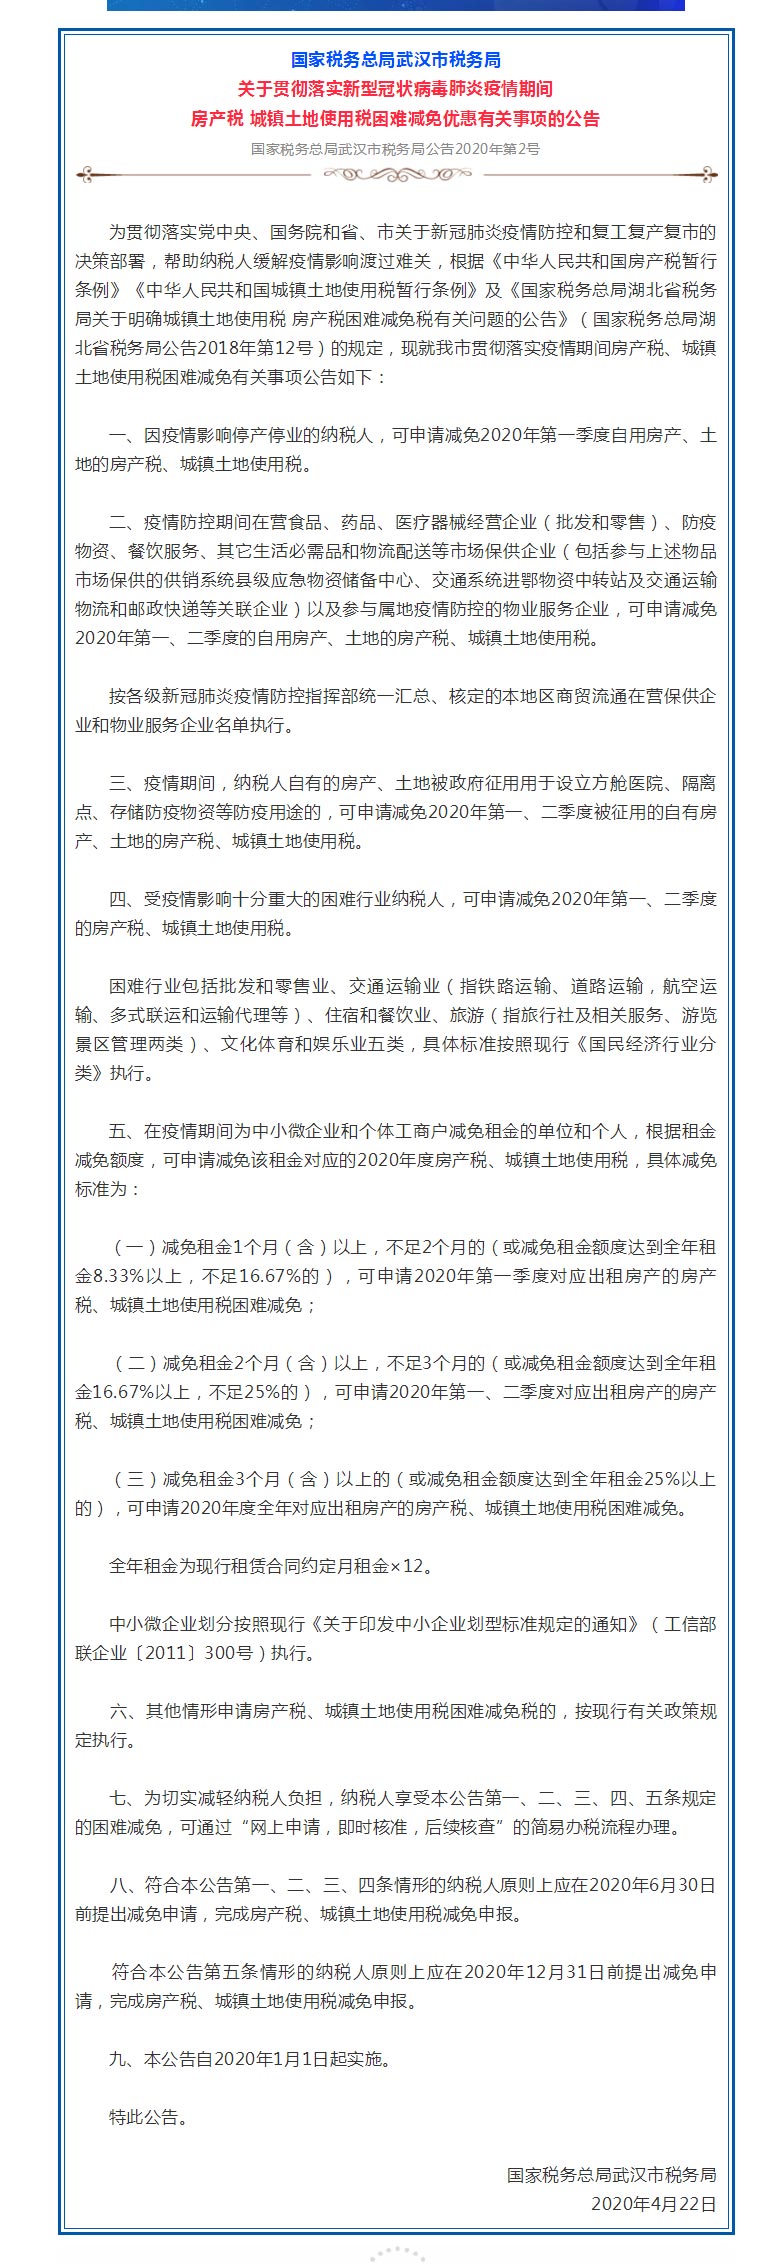 武汉：房产土地被征用建方舱医院等可减免房产税-中国网地产